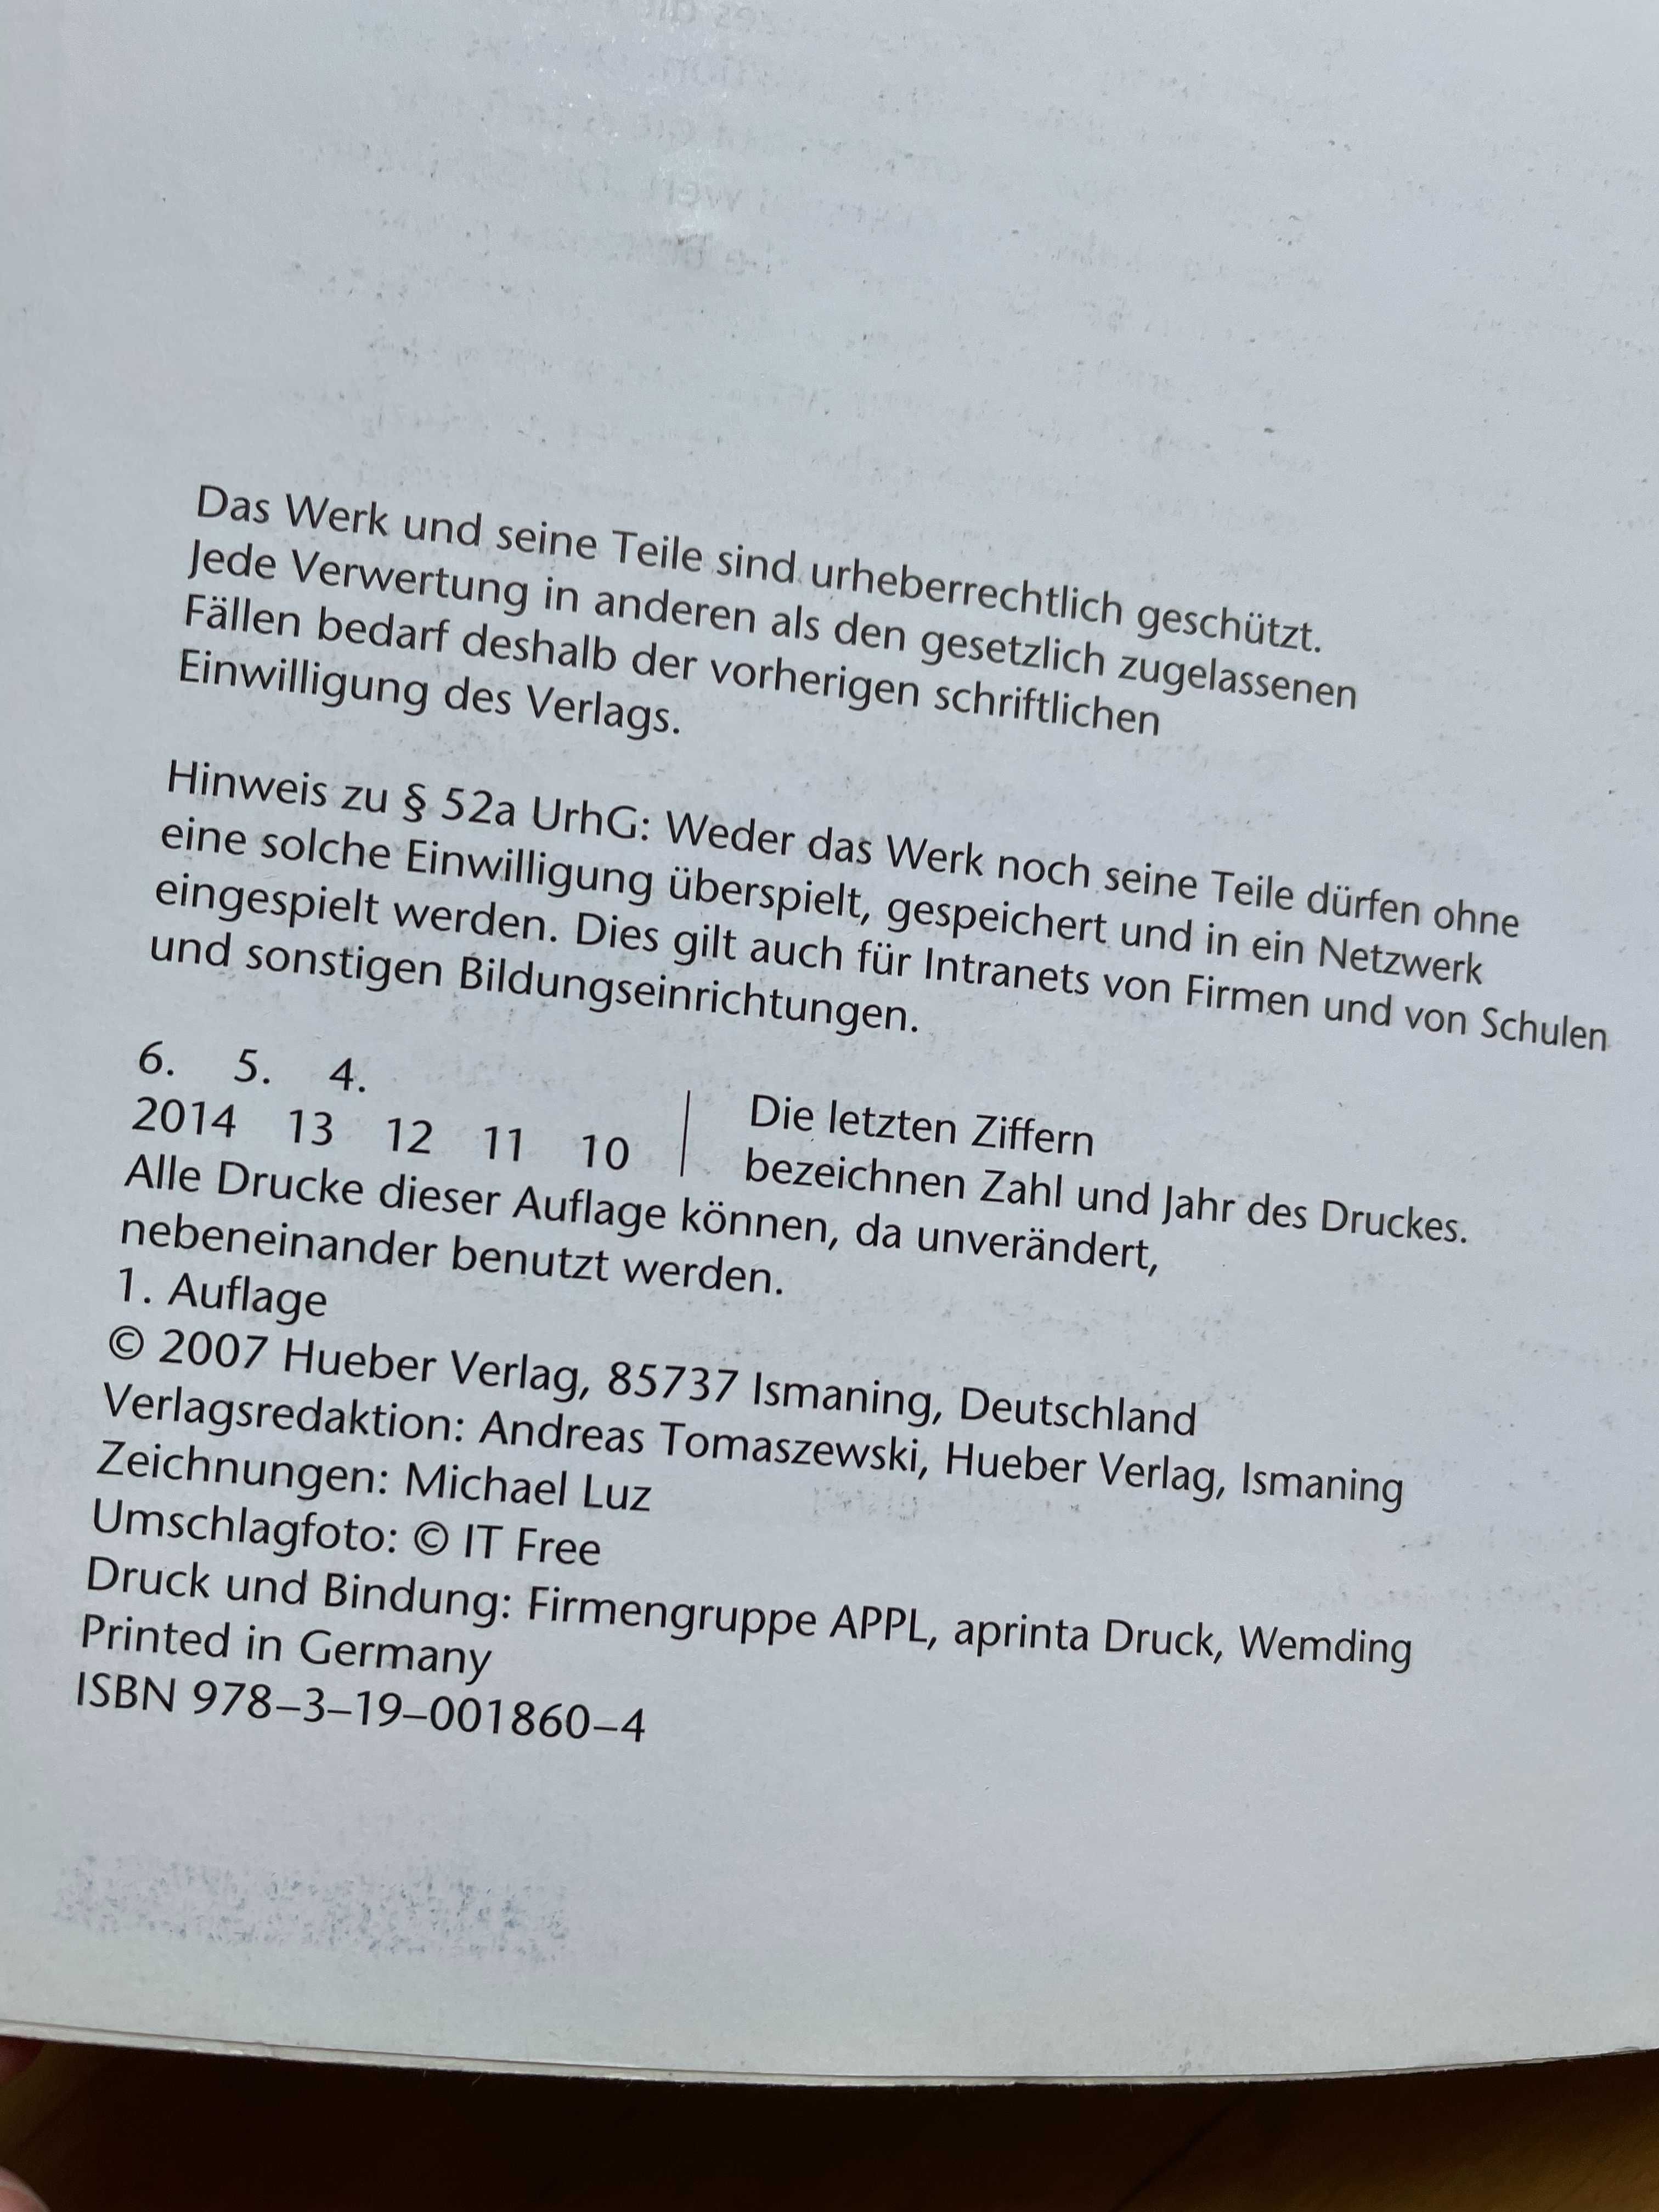 Німецька мова  AusBlick  Kursbuch + Arbeitsbuch  Hueber